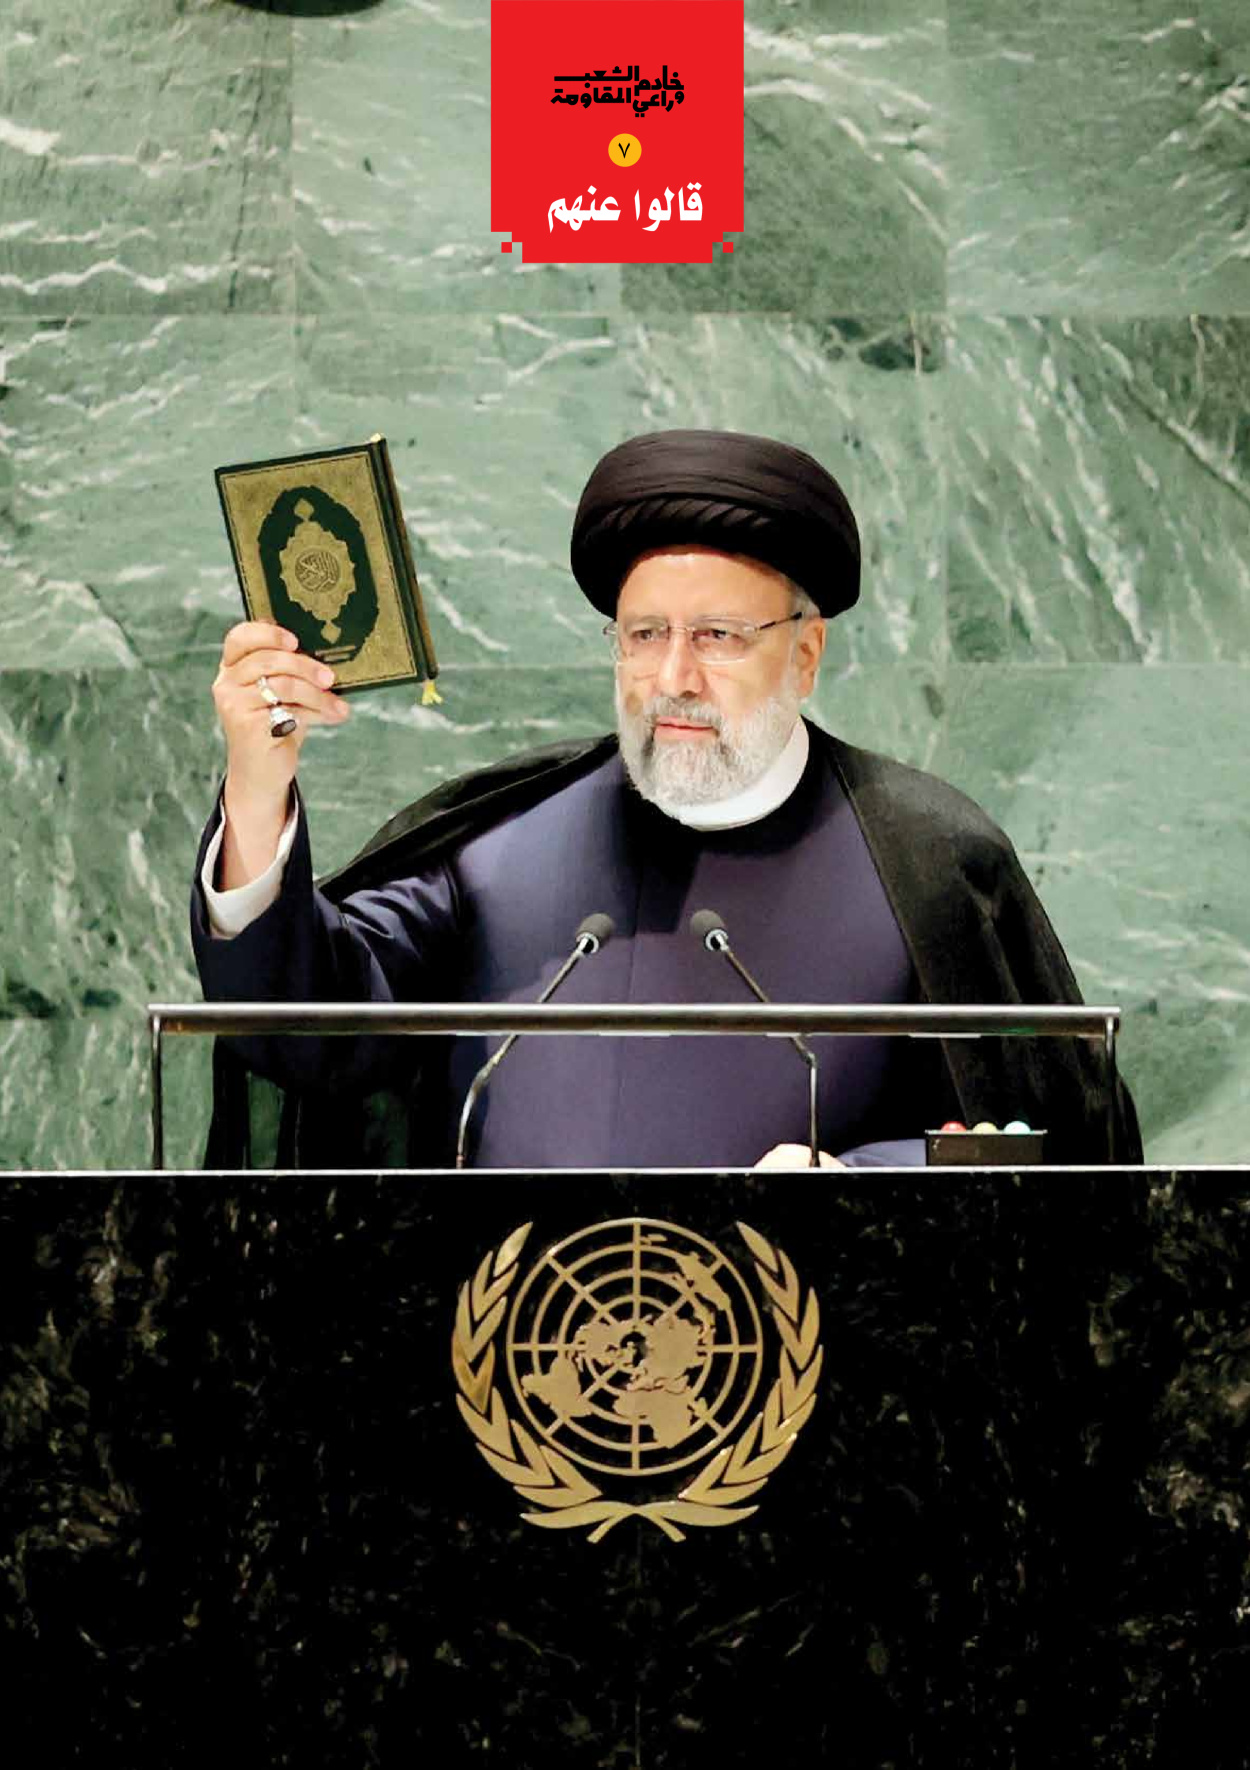 صحیفة ایران الدولیة الوفاق - ملحق ویژه نامه چهلم شهید رییسی - ٢٩ يونيو ٢٠٢٤ - الصفحة ۹٤